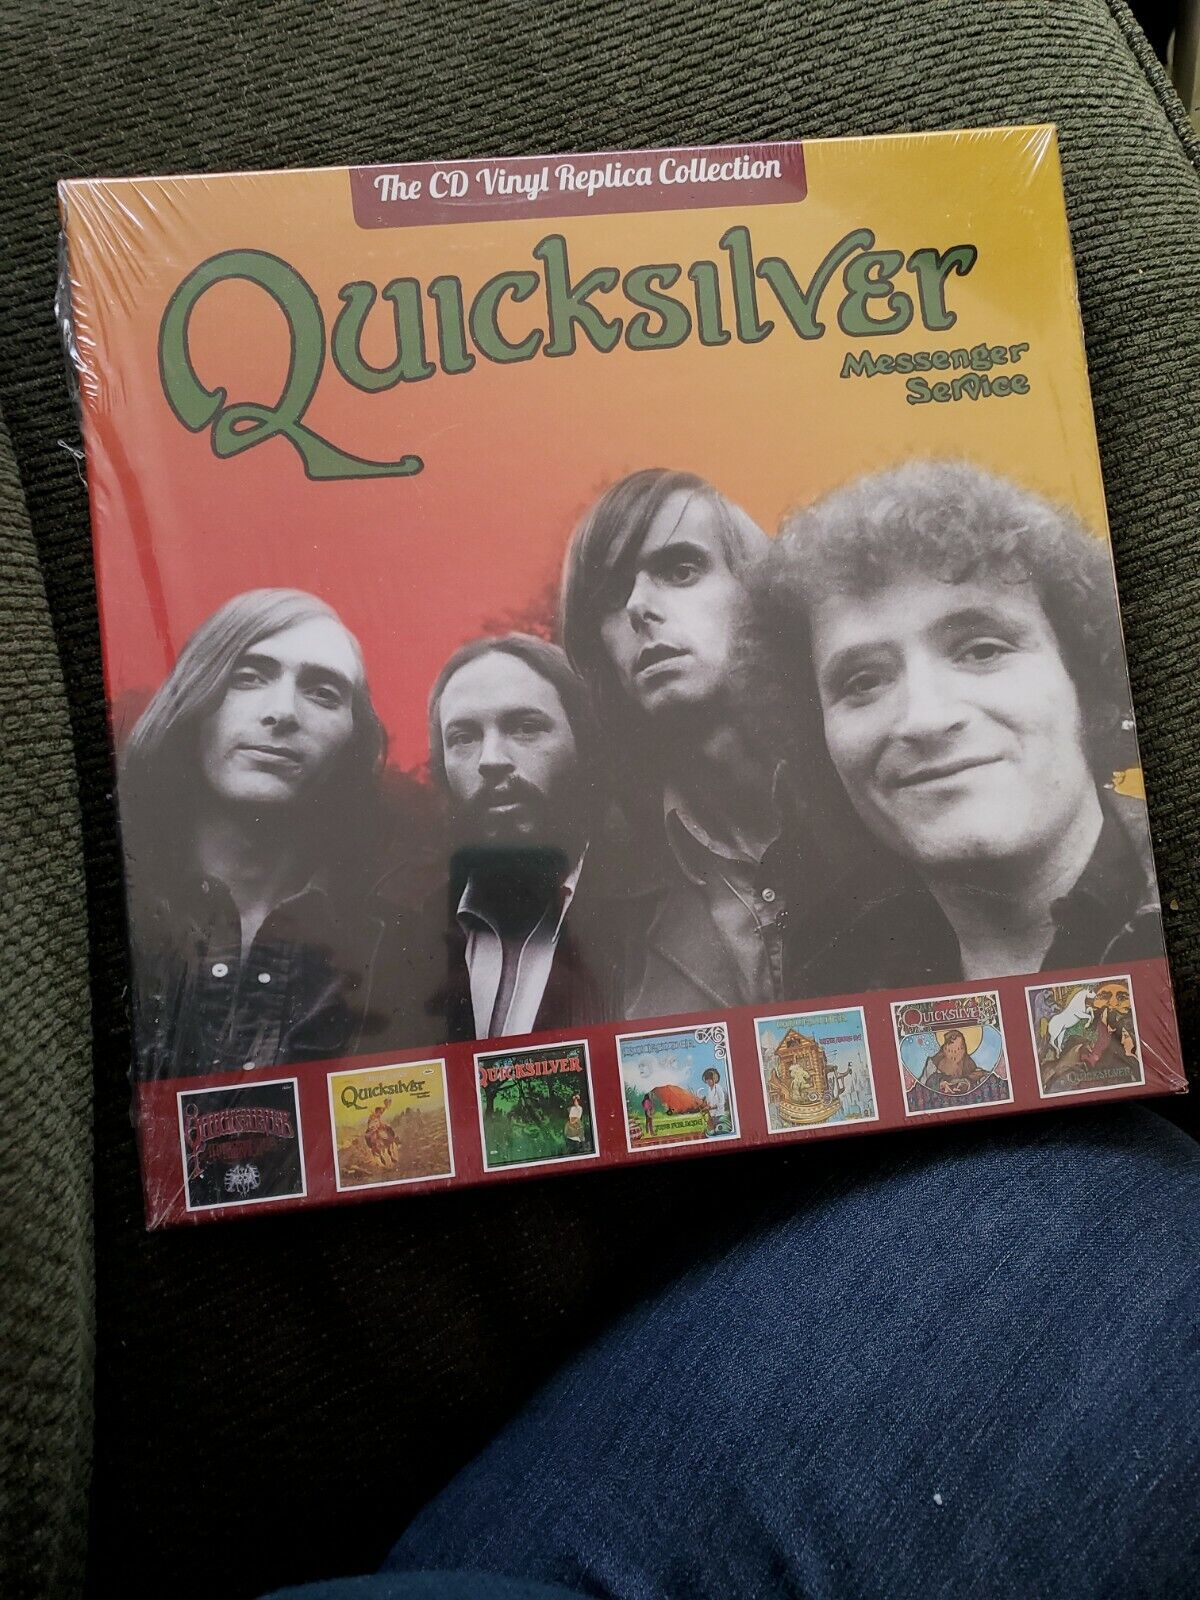 Quicksilver messenger service cd vinyl replica collection box set